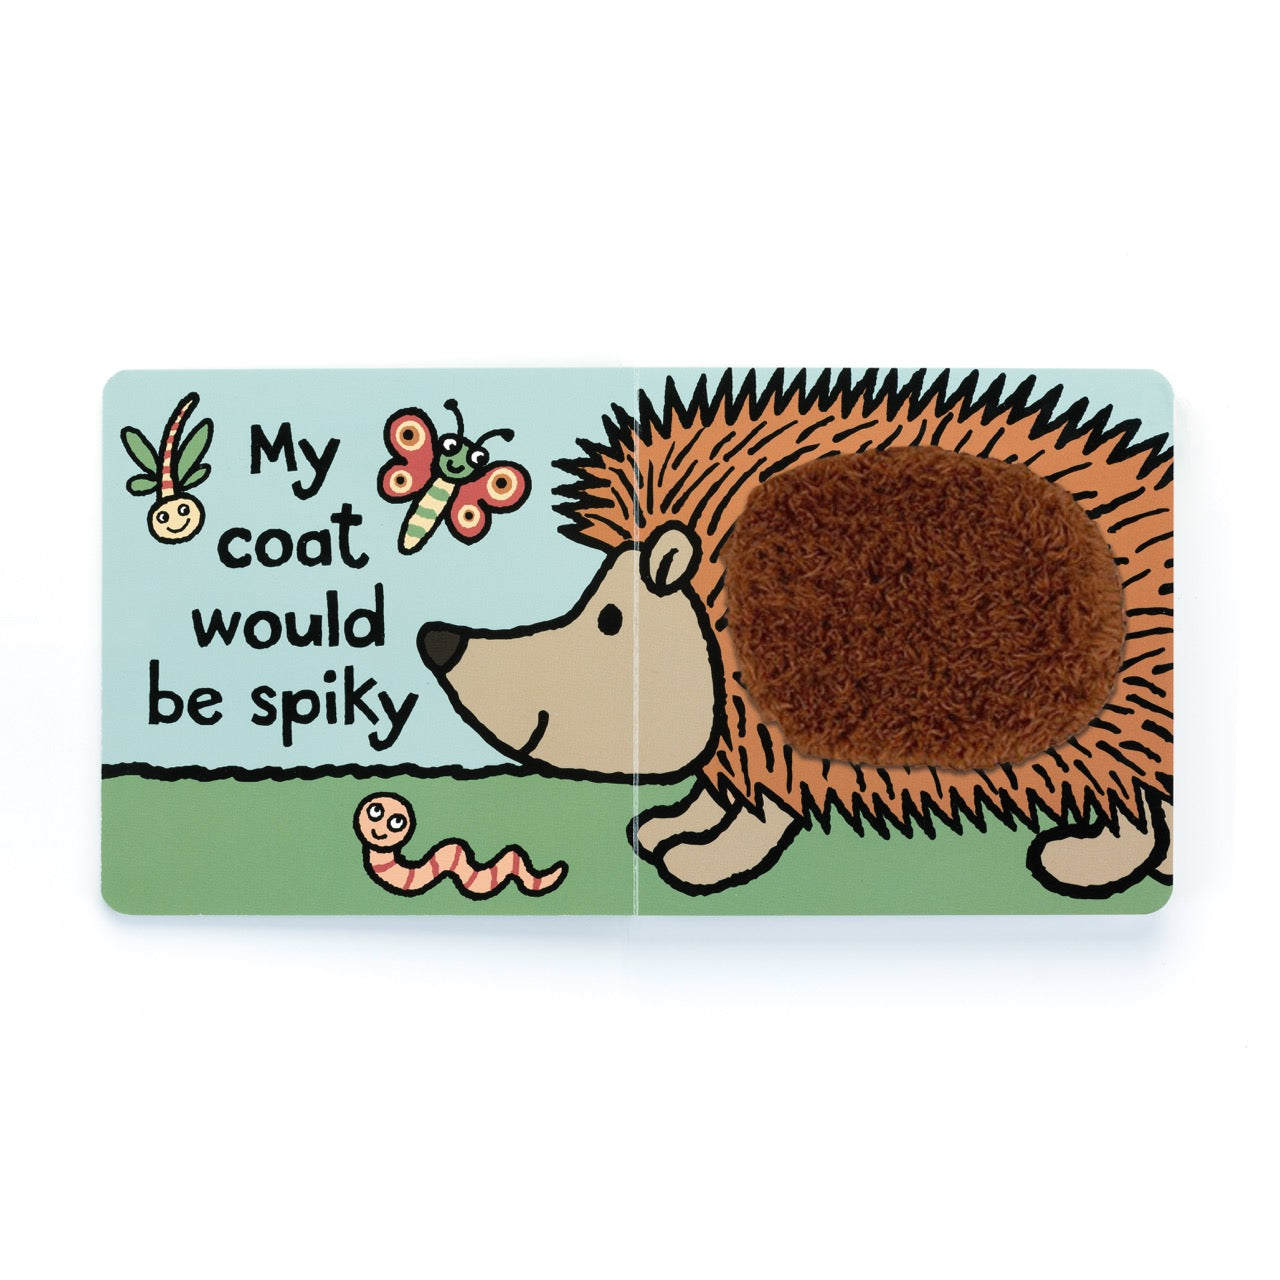 If I were a Hedgehog Board Book